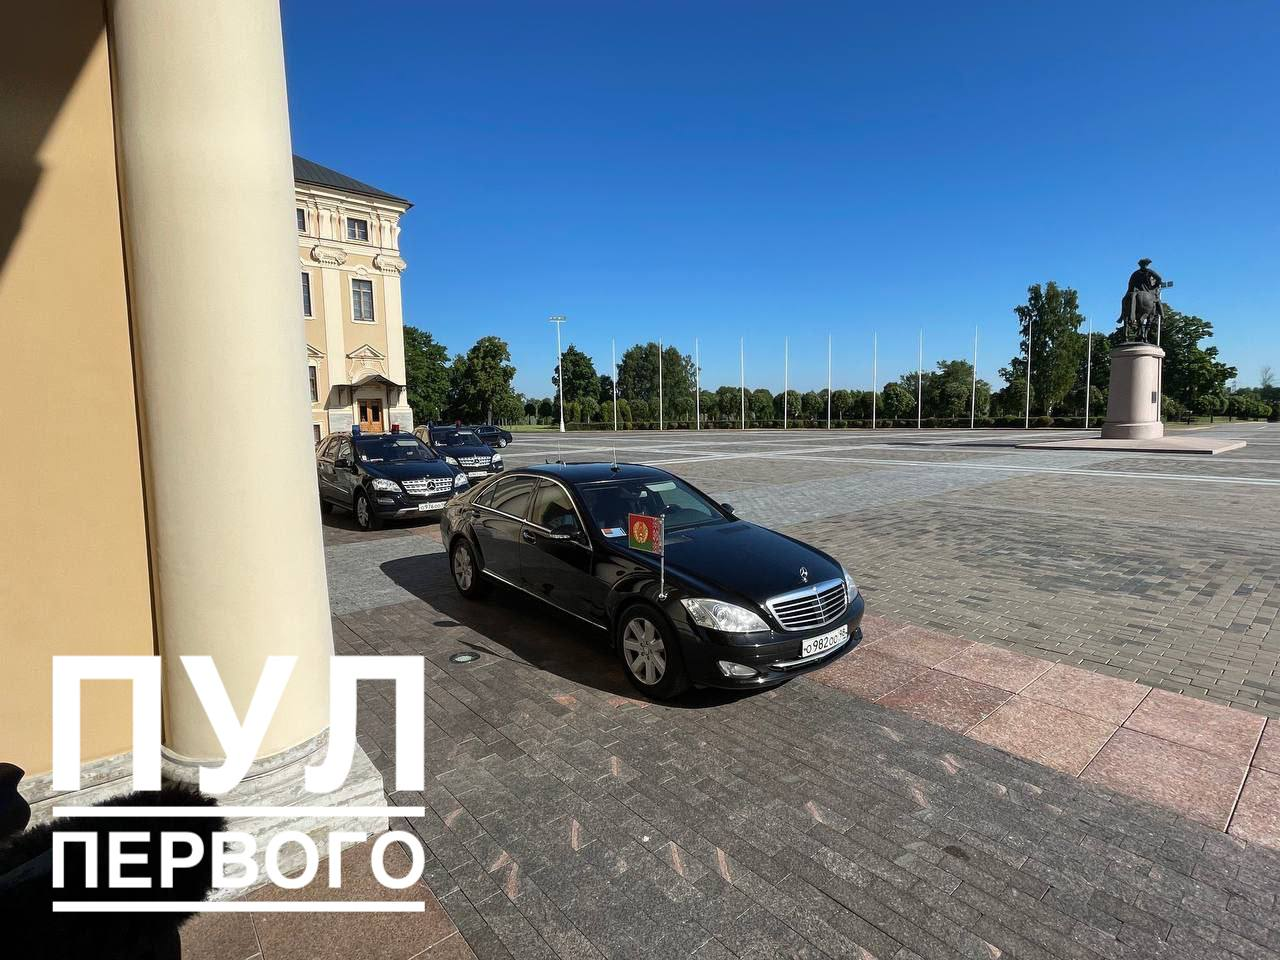 Лукашенко прибыл в Константиновский дворец на переговоры с Путиным